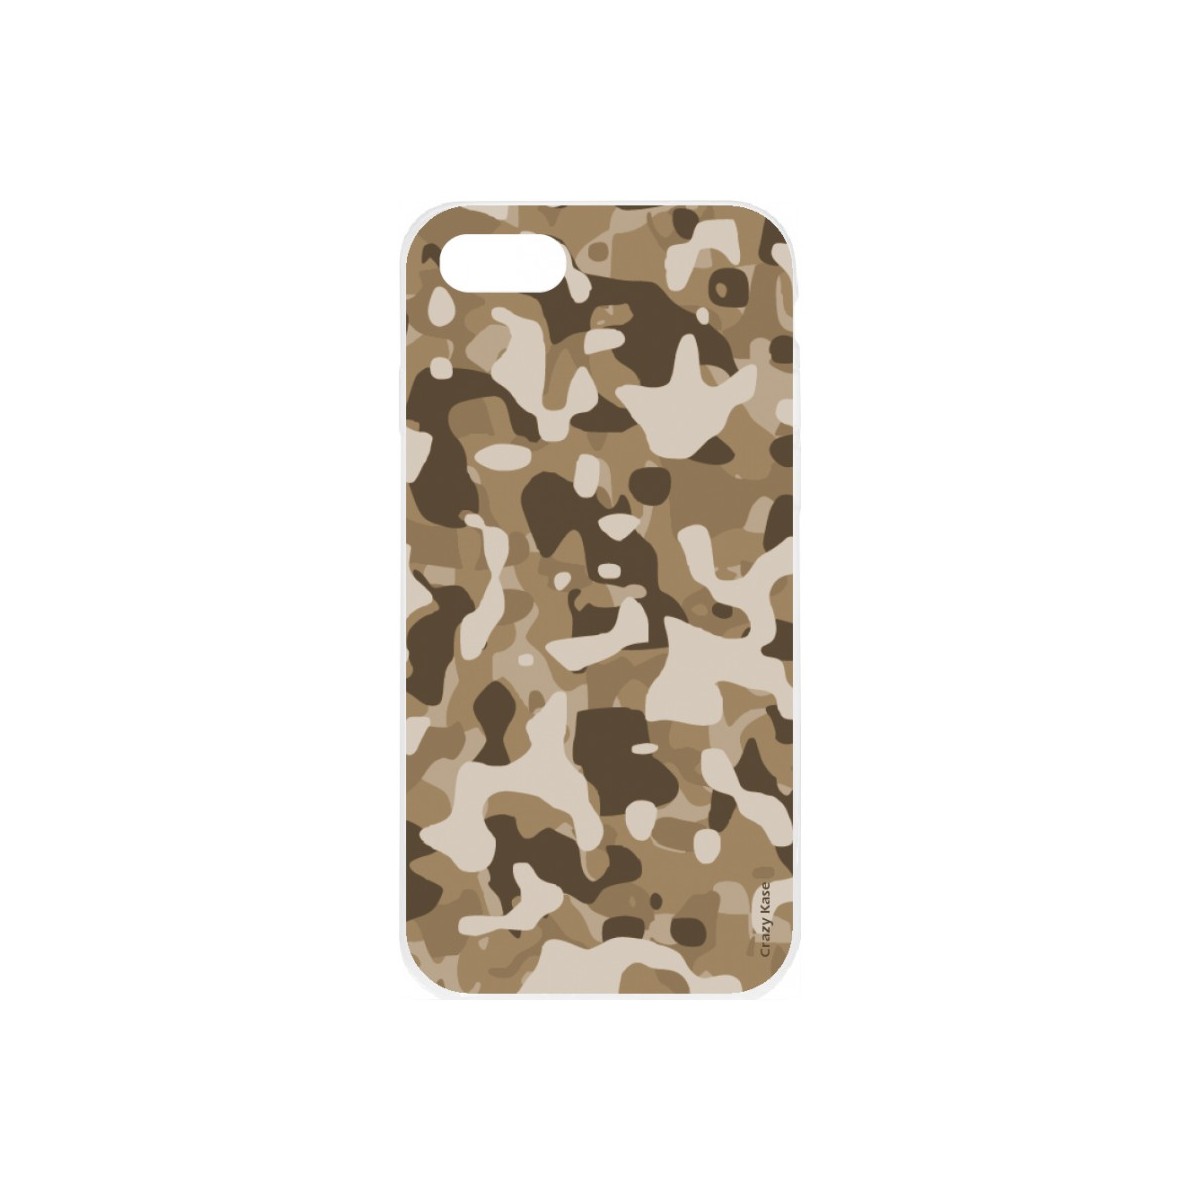 Coque iPhone 7 souple Camouflage militaire désert Crazy Kase